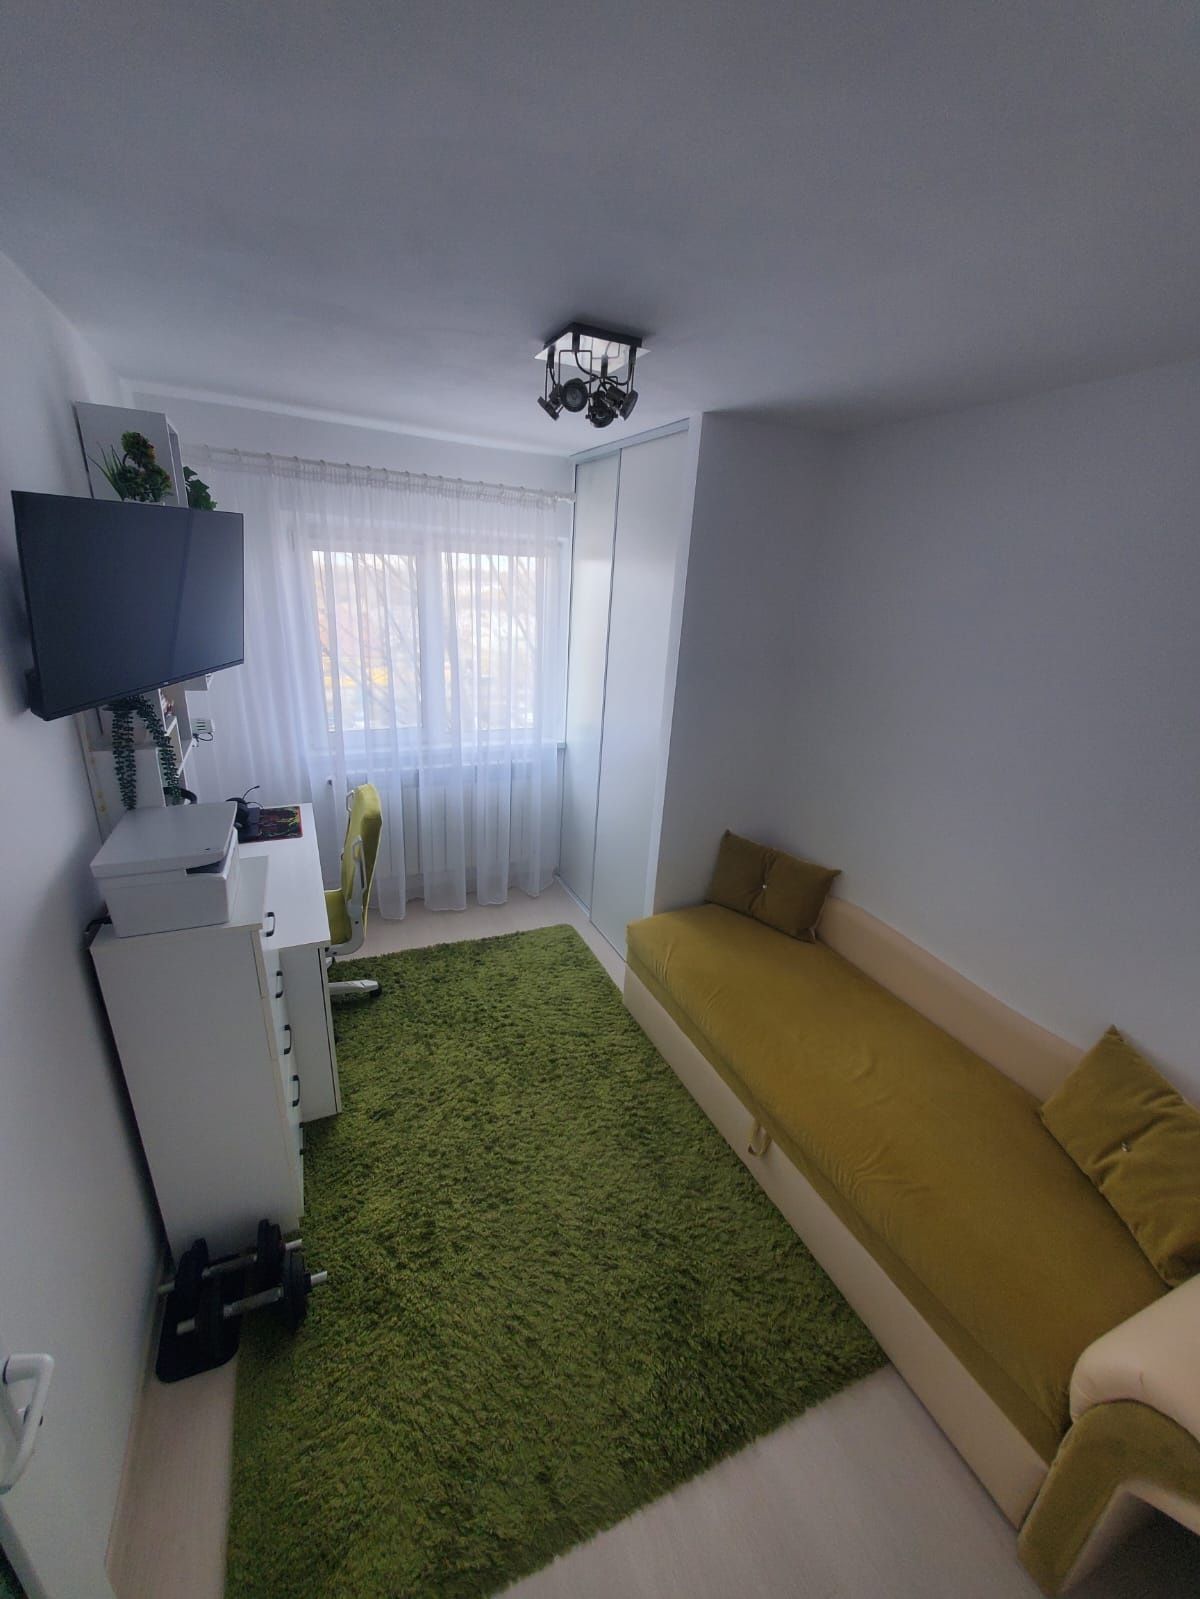 Apartament 4 camere, confort 0, Baba Novac, Energia